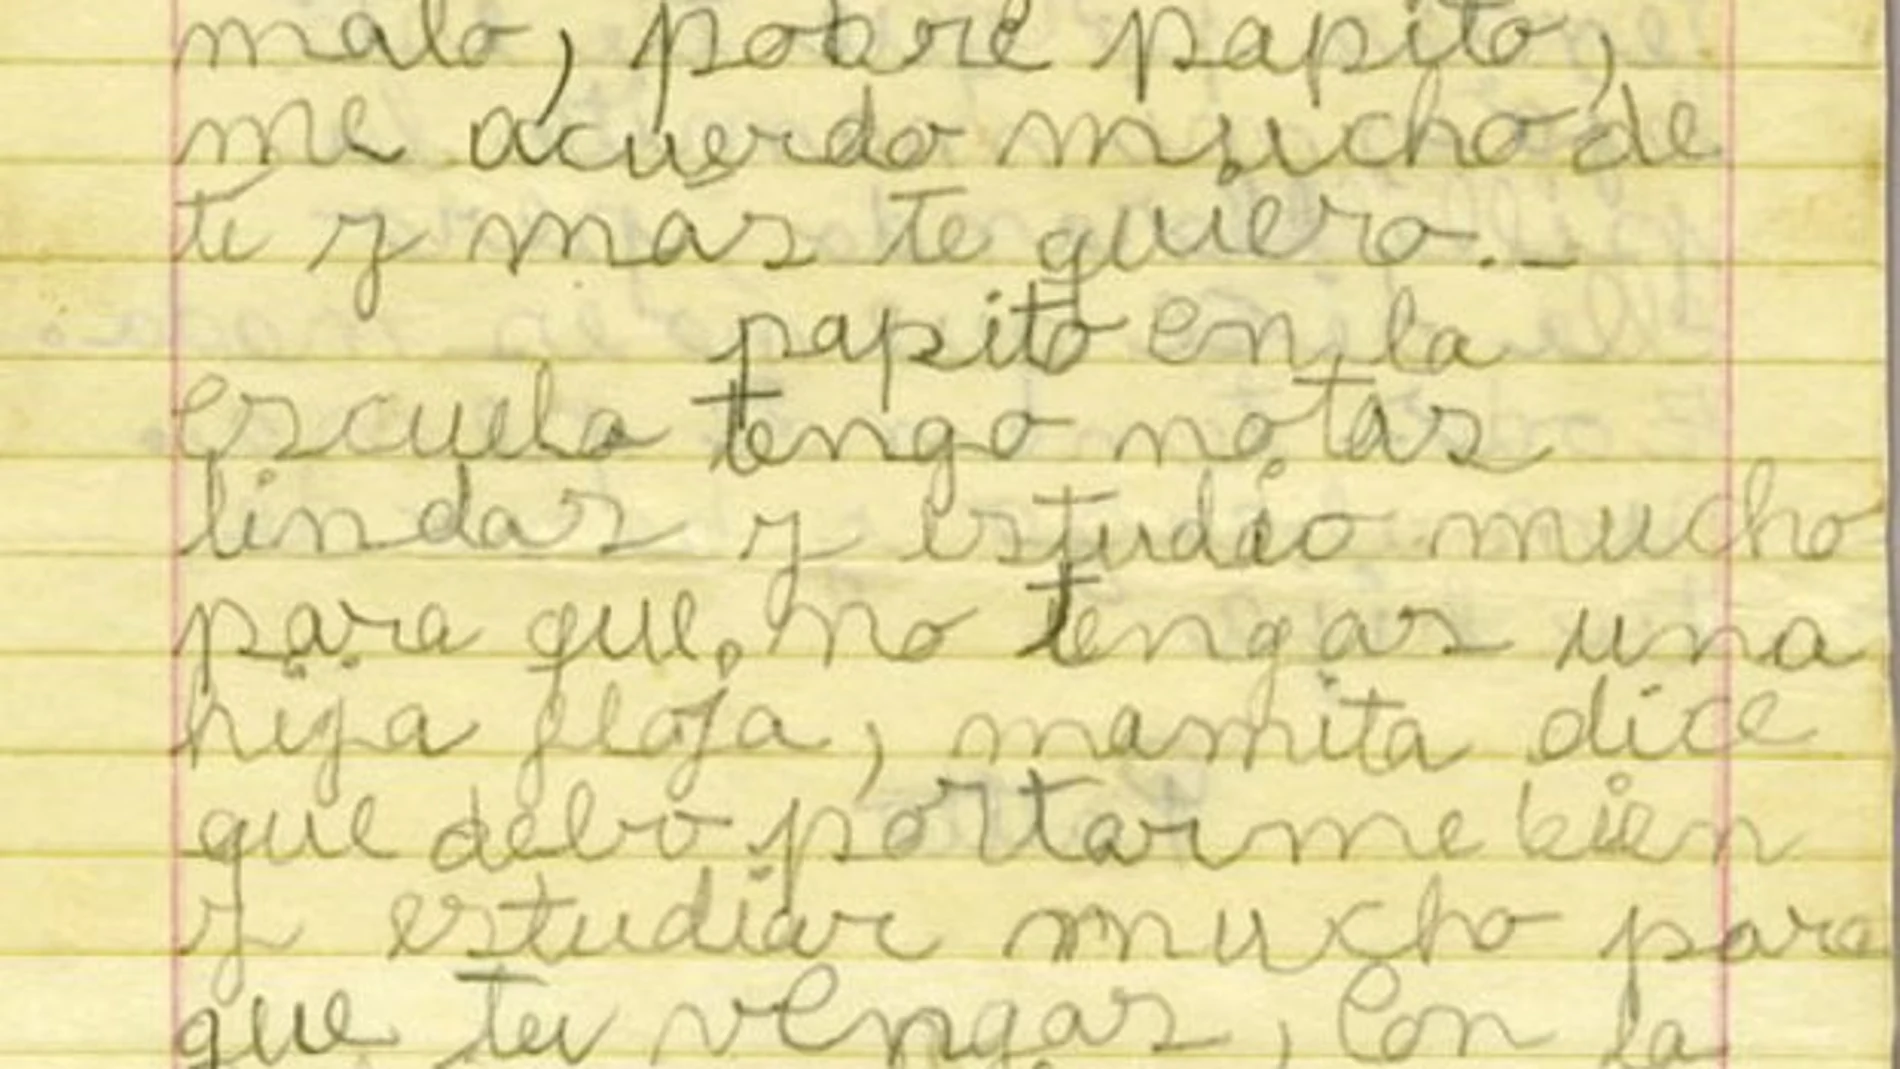 El Museo de la Memoria y los Derechos Humanos de Chile contiene cartas que varios niños escribieron a sus padres desaparecidos